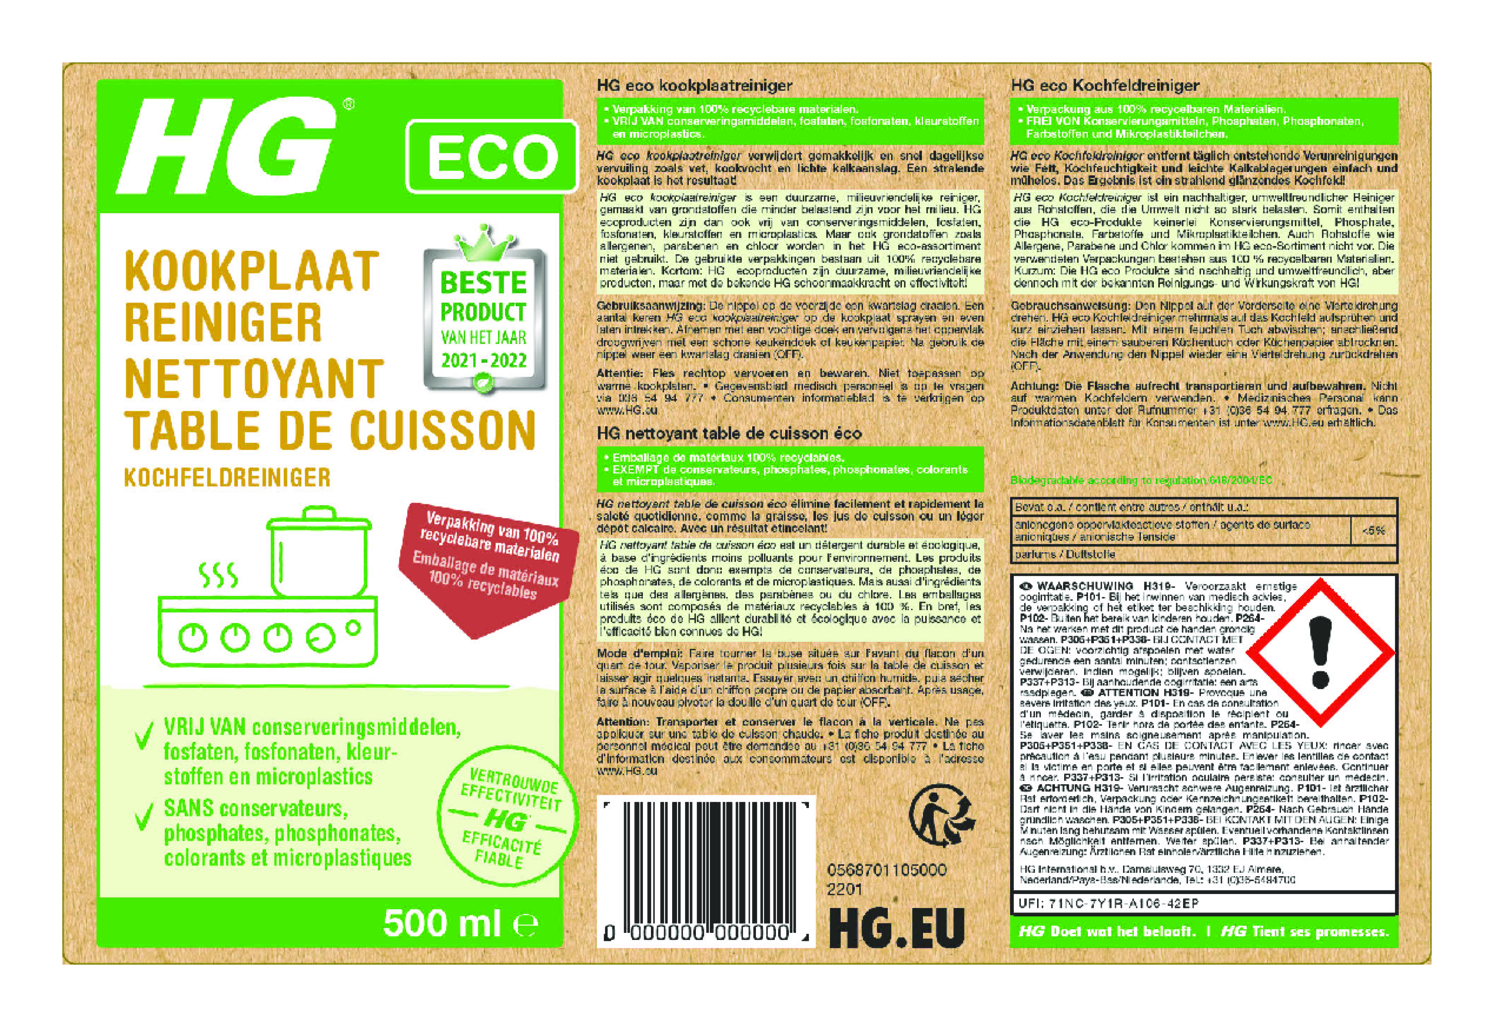 Eco Kookplaatreiniger afbeelding van document #1, etiket